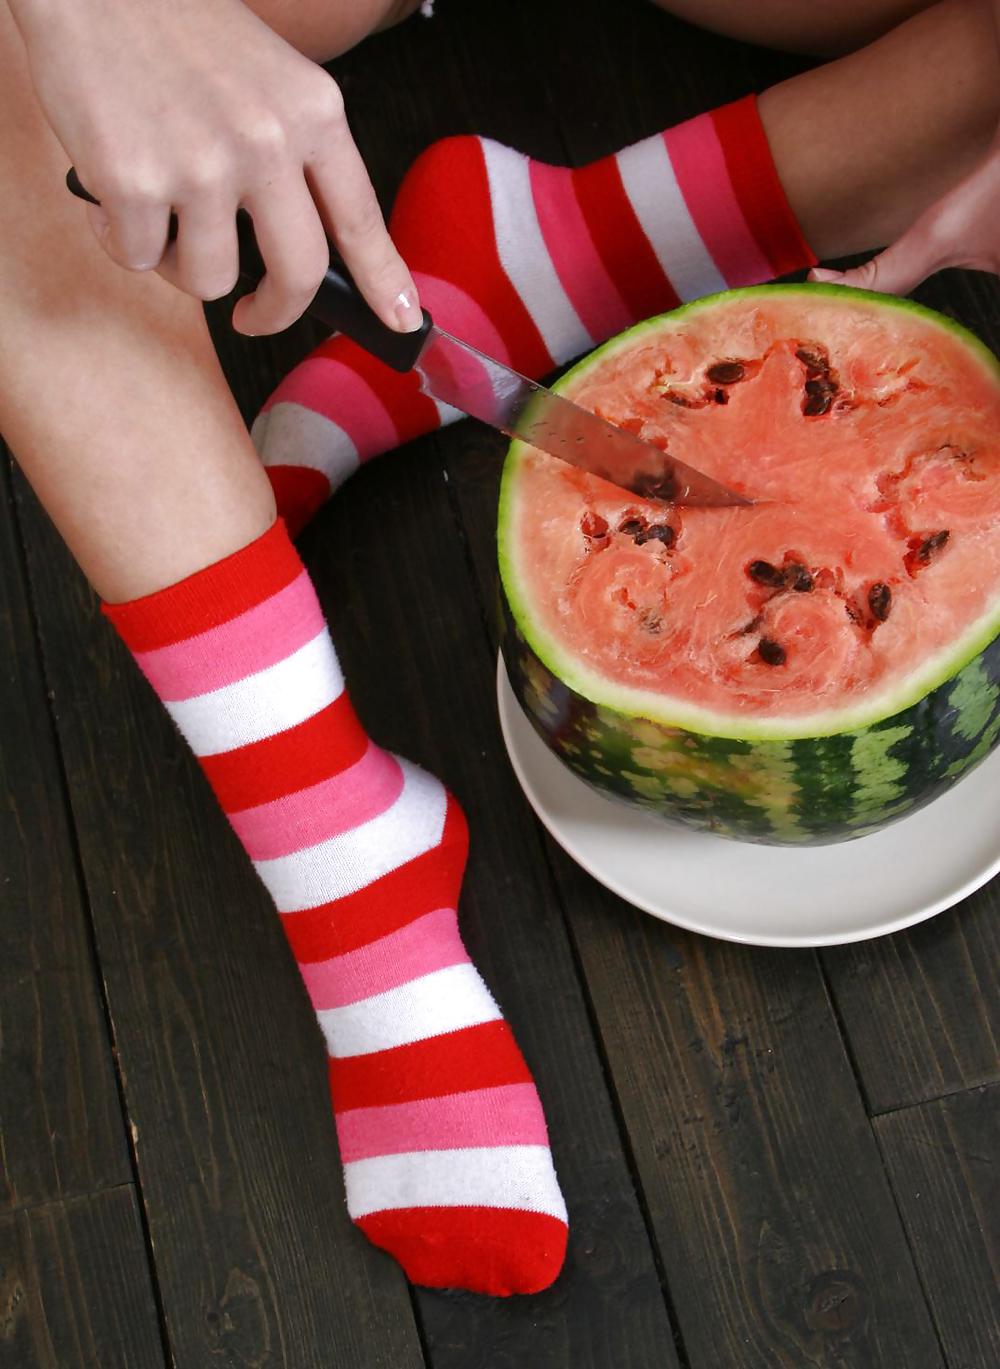 Cute Christina - Eating a watermelon #4556151